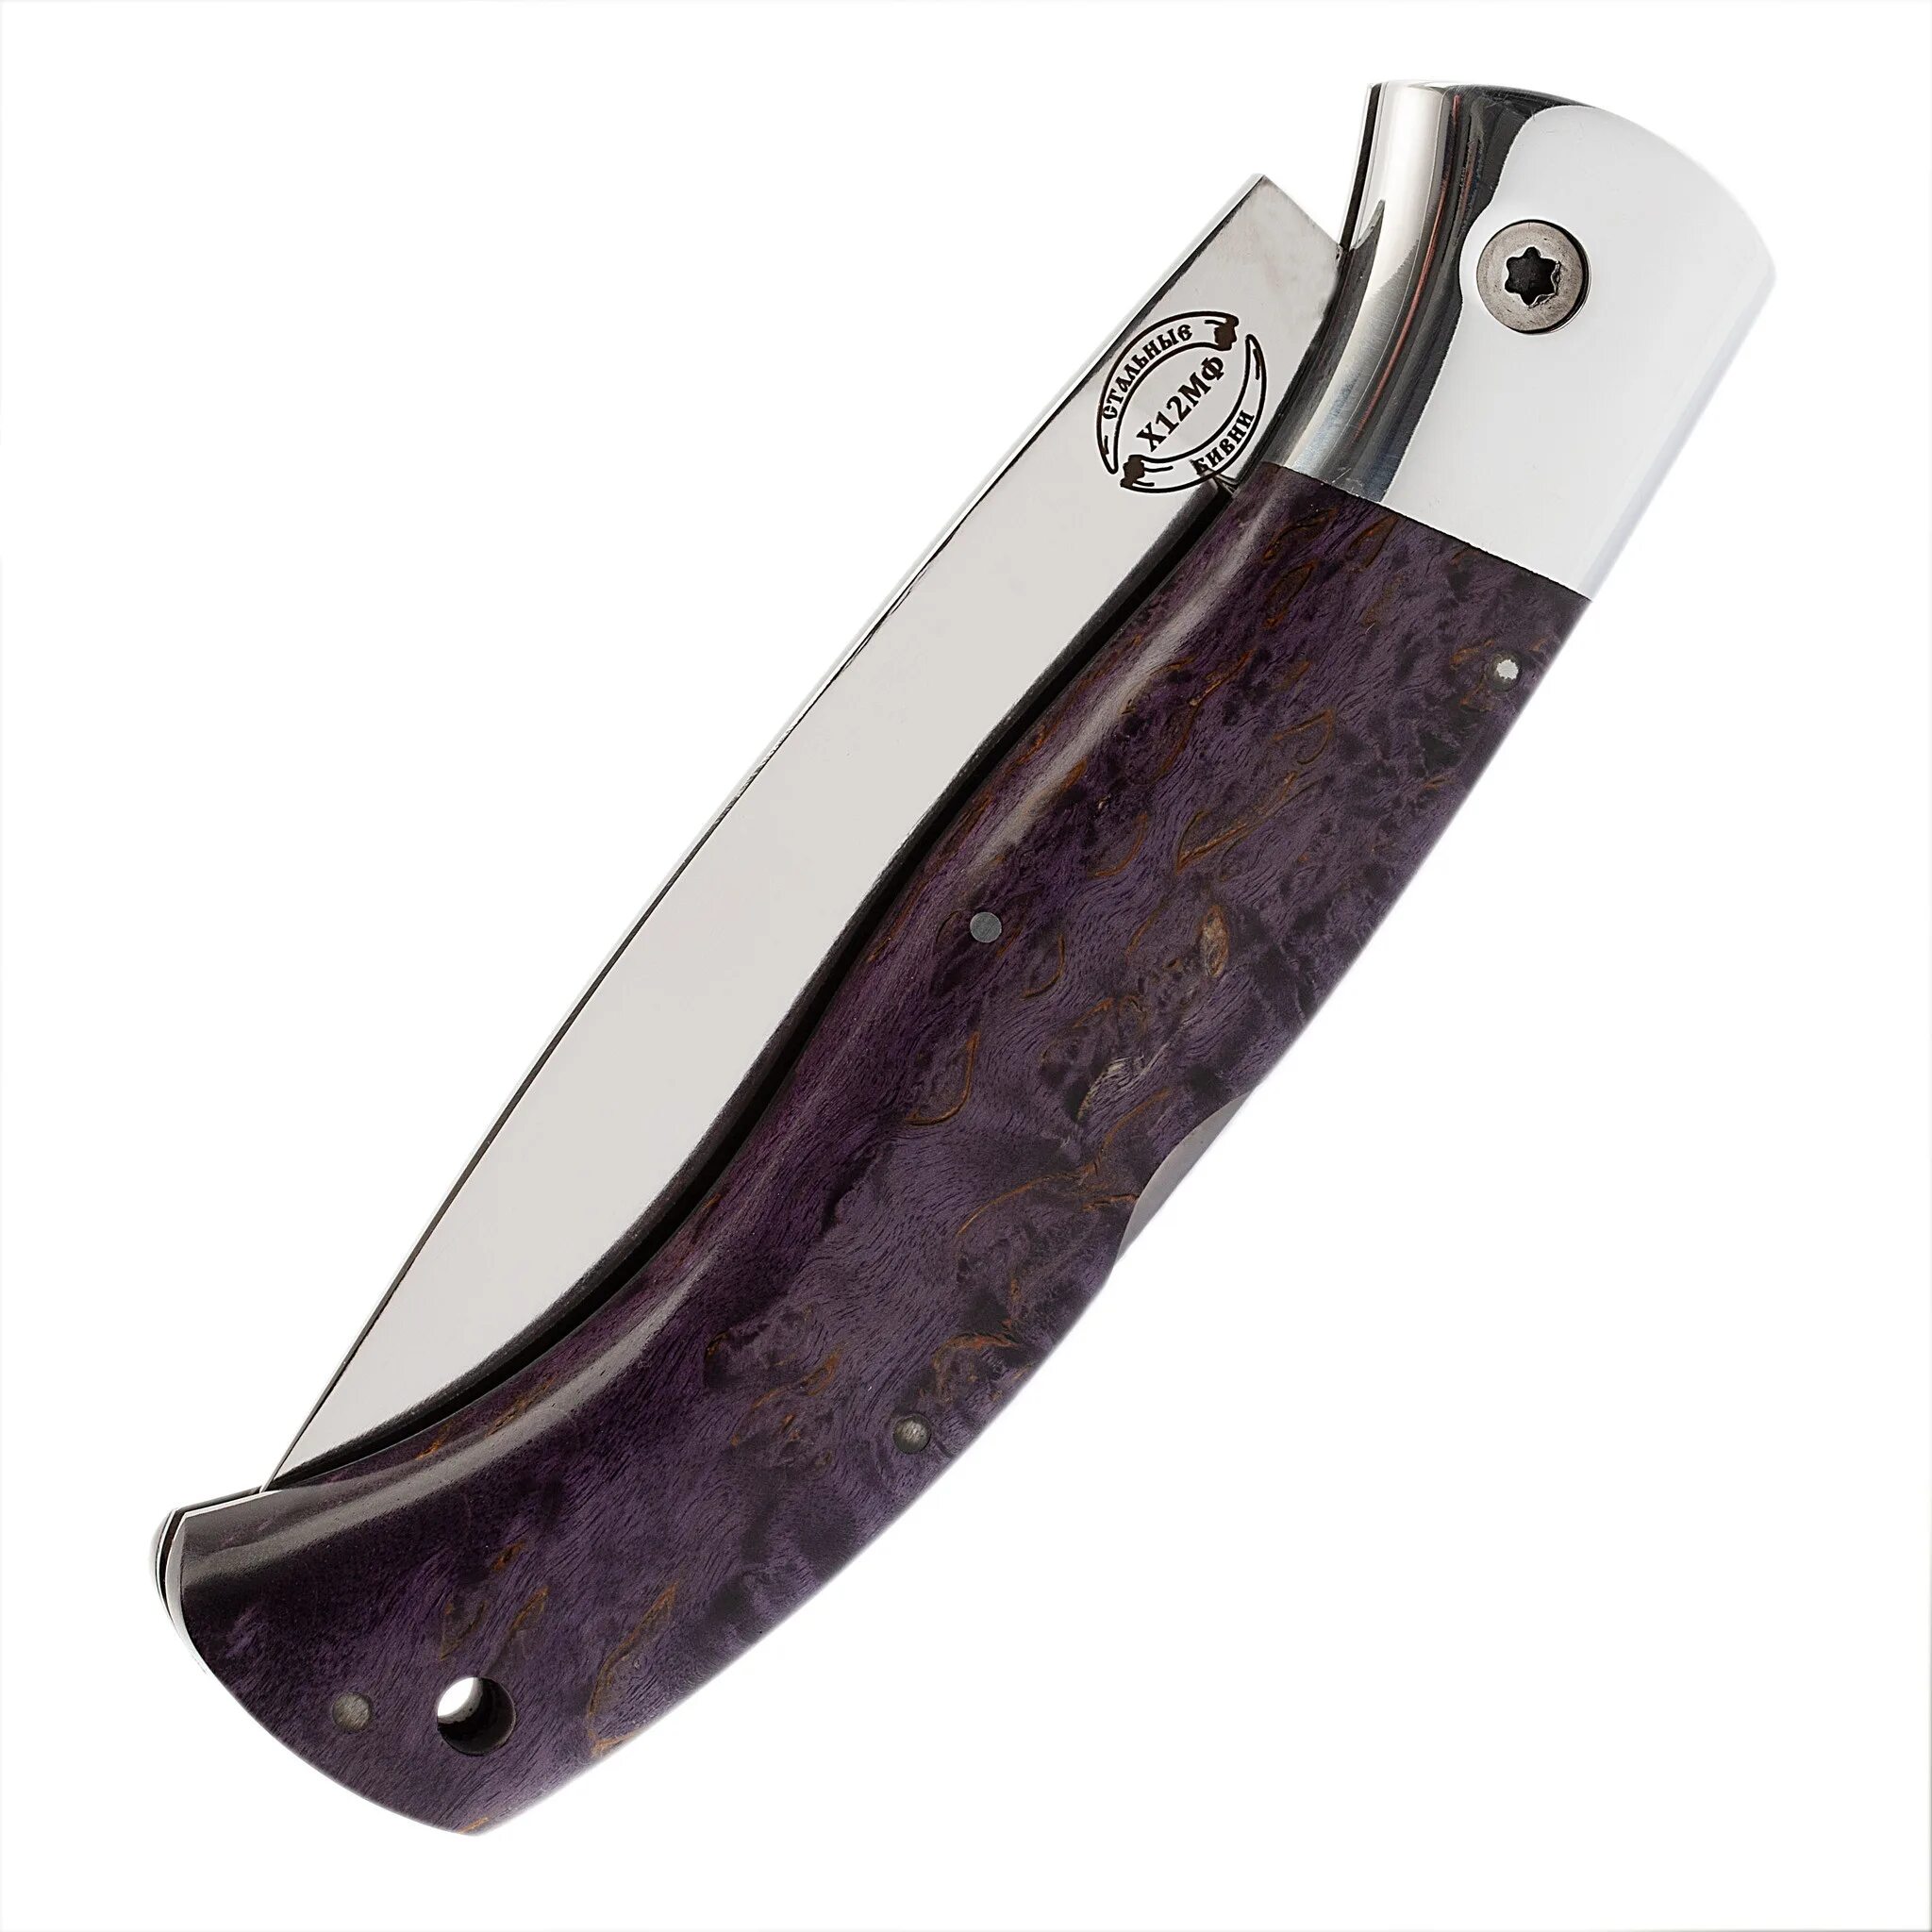 Ножи стальные бивни купить. Складной Якутский нож. Нож-складной "Якутский" к340 складной (стабил, Ков. Дол)"/ # (0-96dj). Якутский нож является холодным оружием. Стальные бивни отзывы.